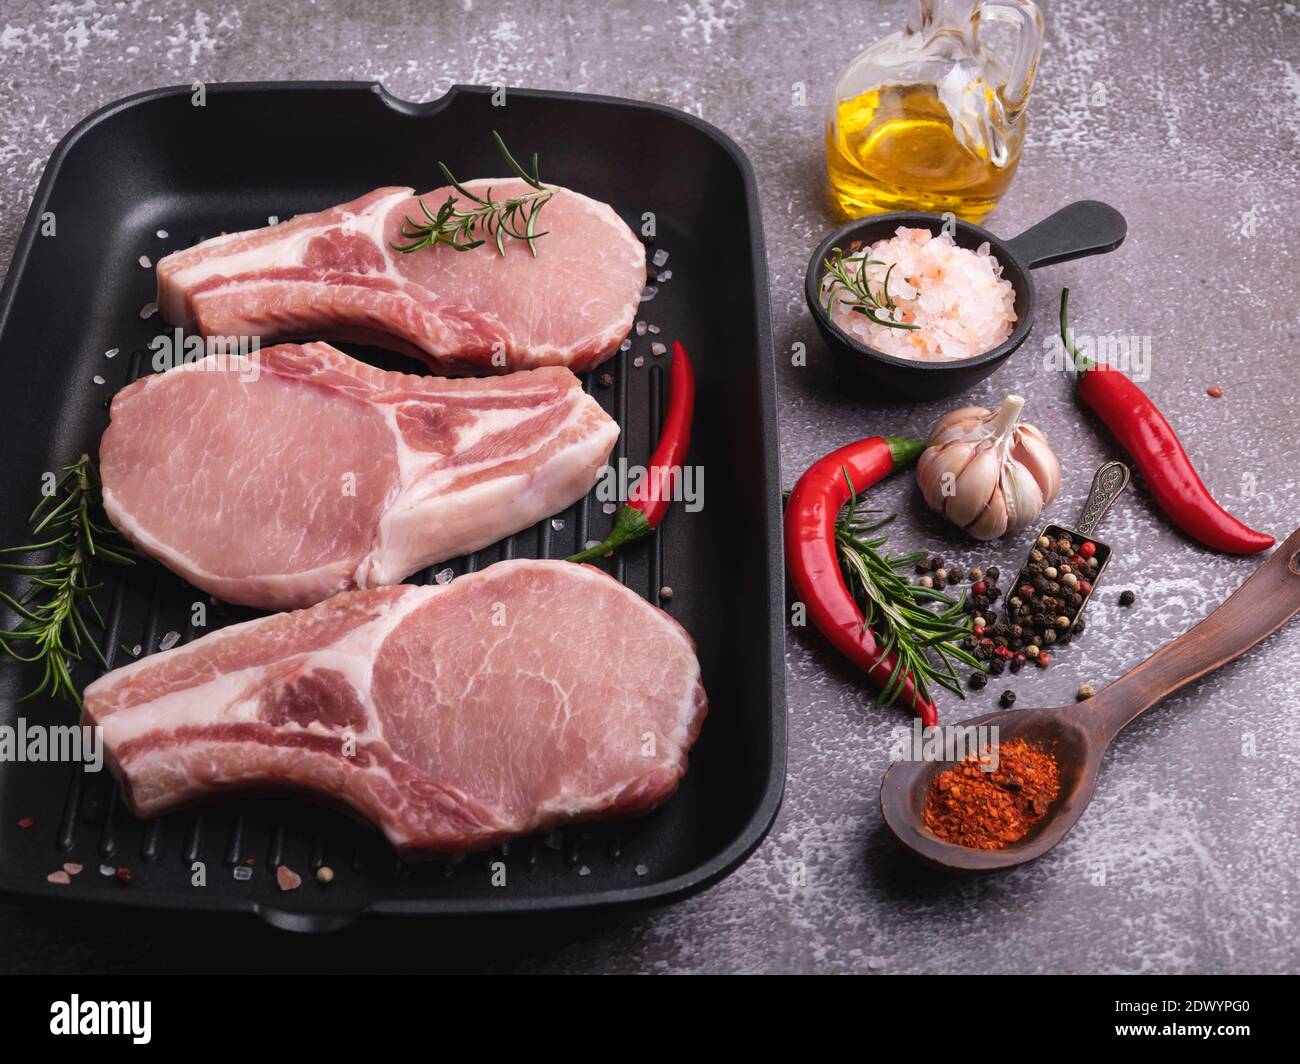 morceaux frais de viande de porc, de boeuf, hacher sur un os, sur une poêle à gril, épices Banque D'Images